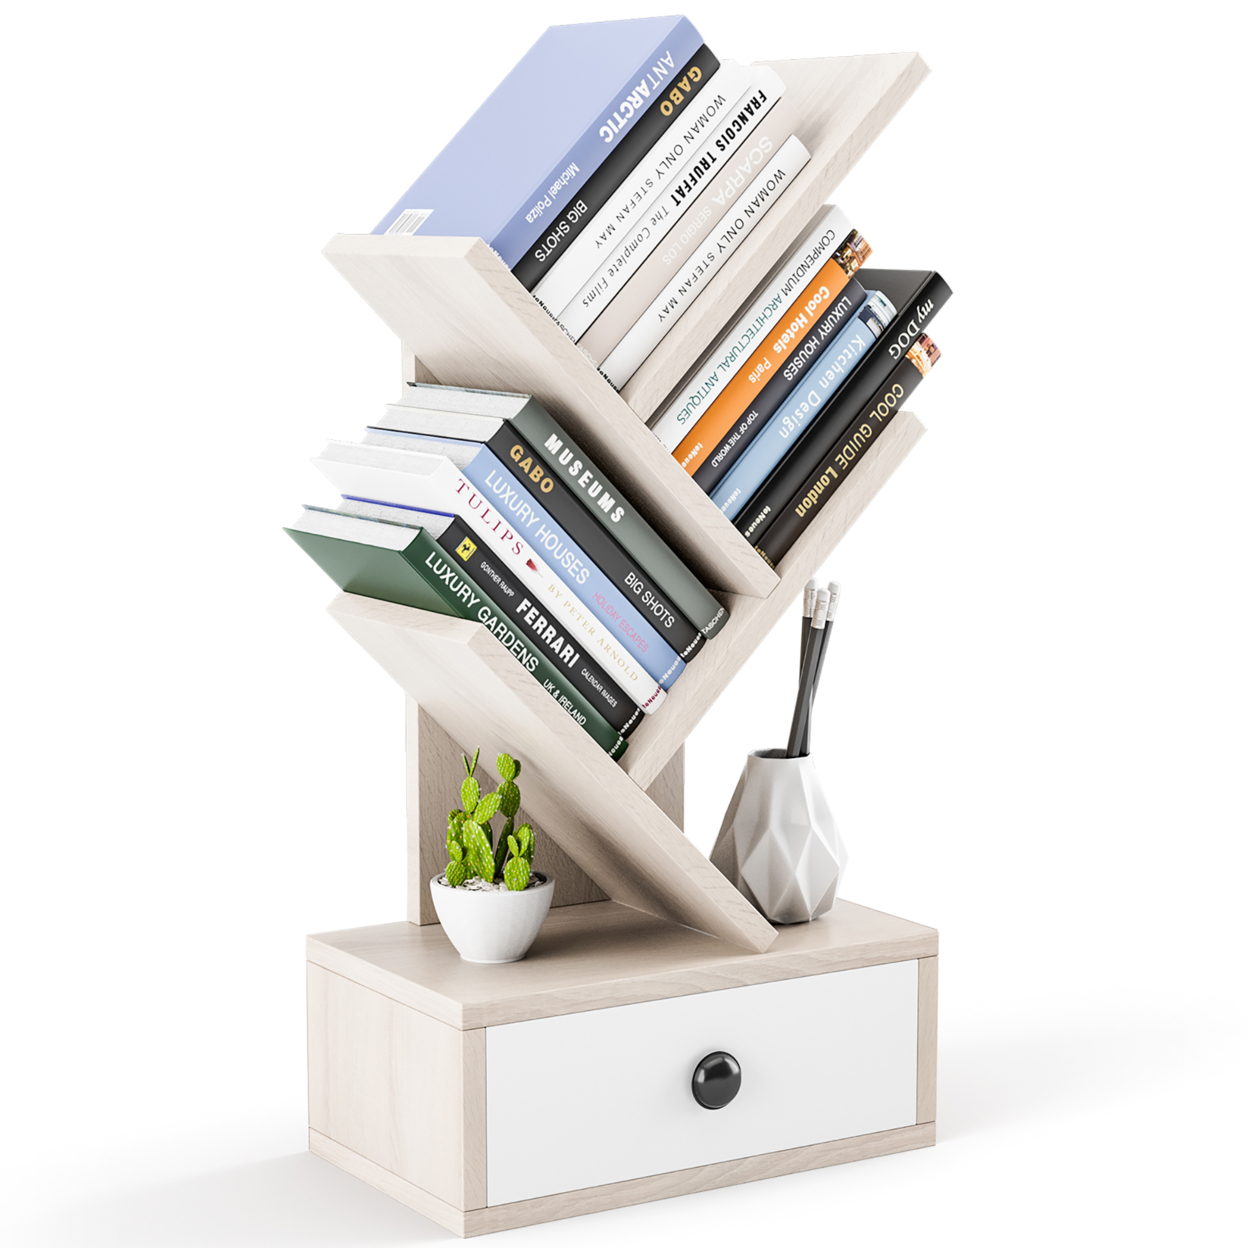 5-Tier Tree Bookshelf W/ Wooden Drawer Display Storage Organizer Rack - Beige